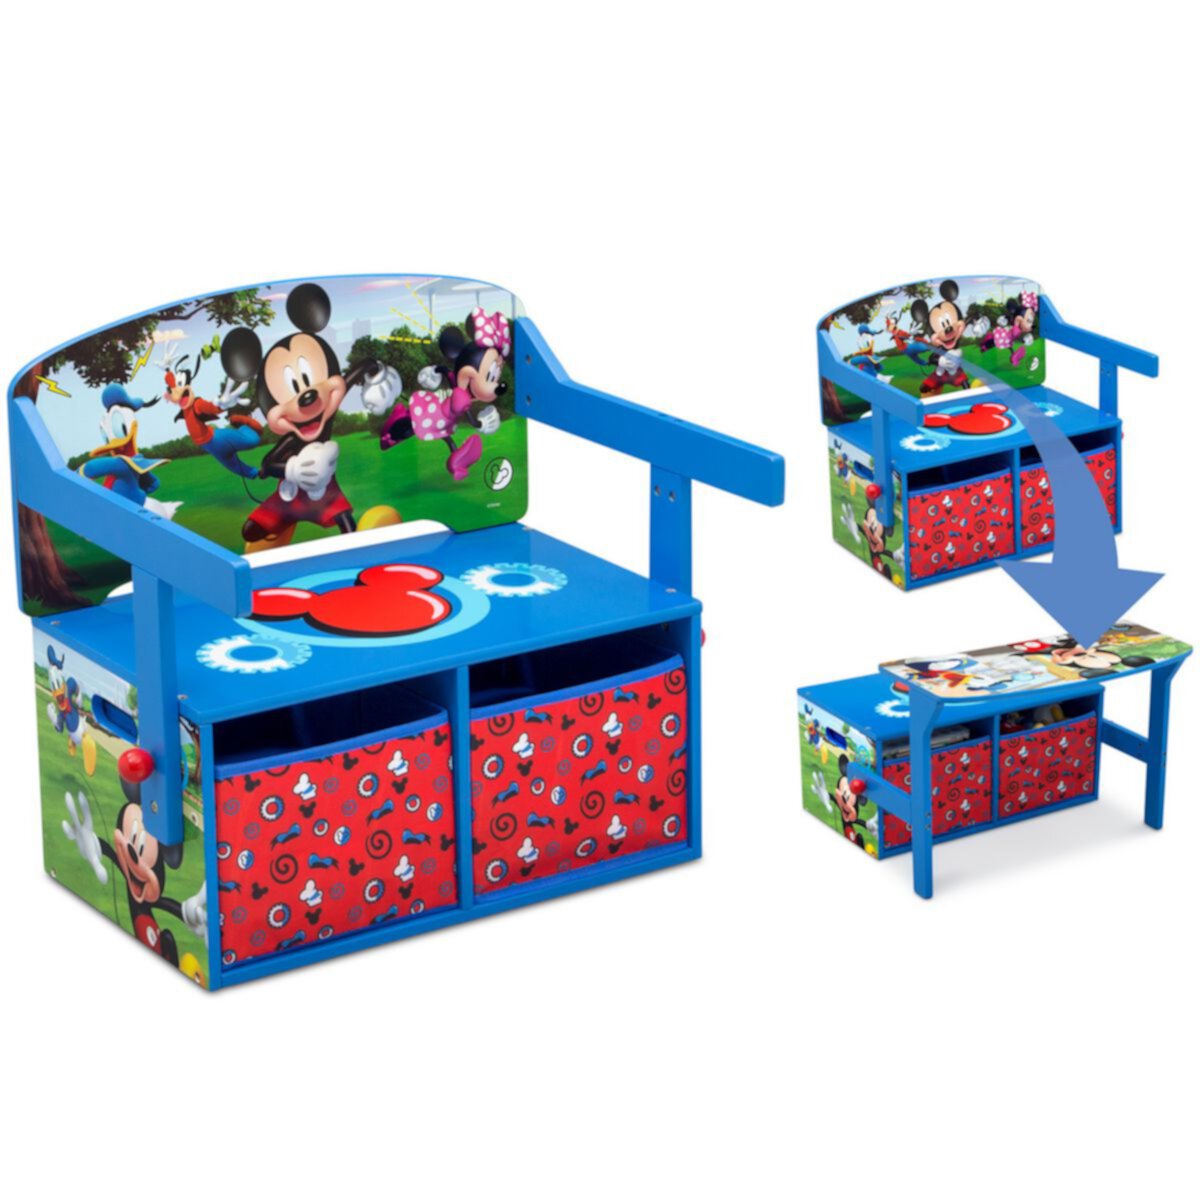 Трансформируемая скамейка для занятий с Микки Маусом Disney от Delta Children Delta Children